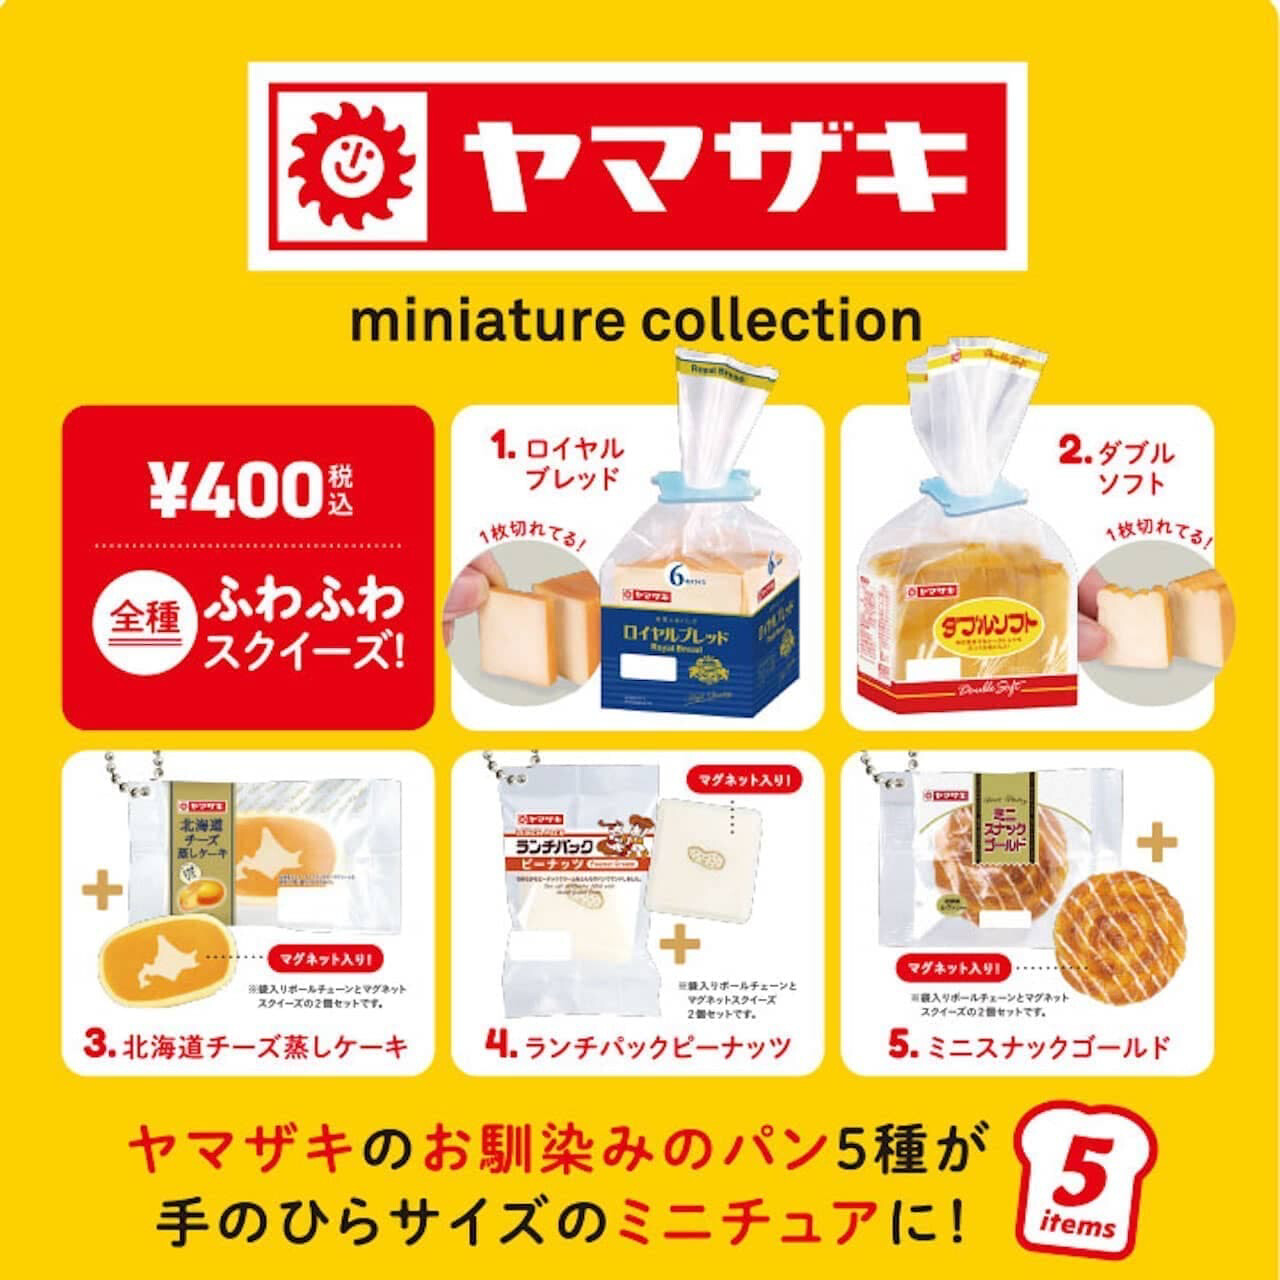 Yamazaki Bread Miniature Squishy Gashapon